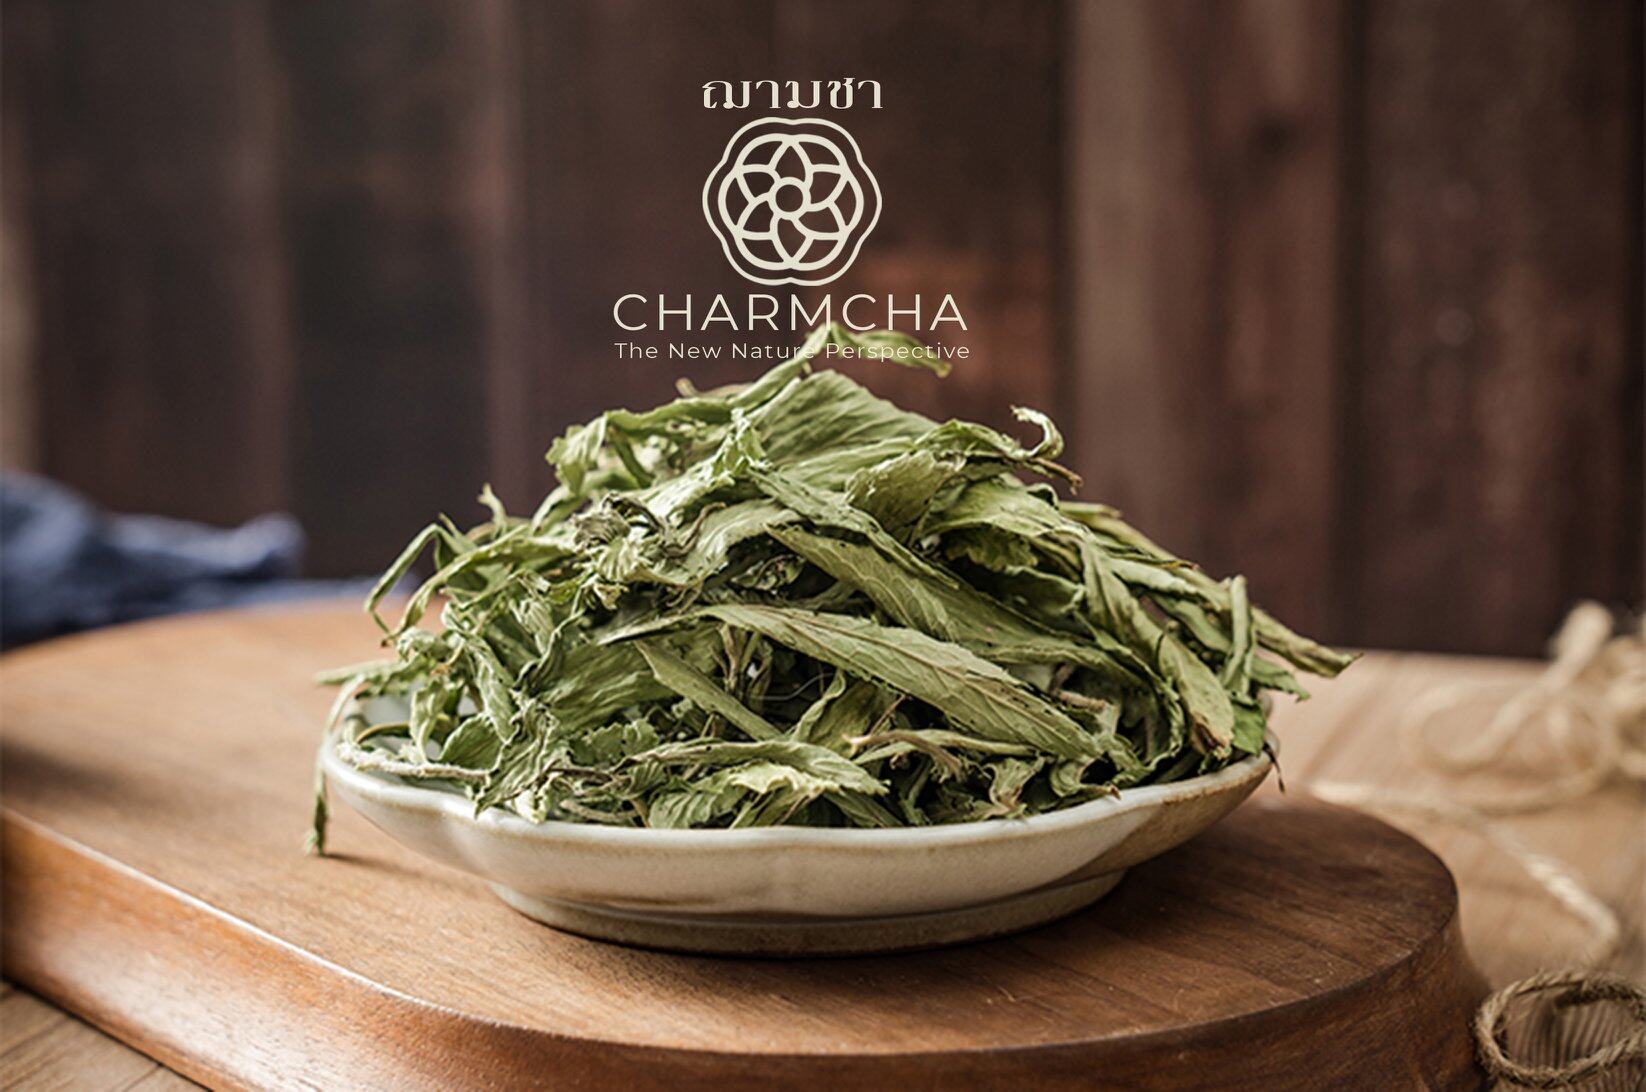 หญ้าหวาน (Stevia) ให้ความหวานแทนน้ำตาล บำรุงตับ ลดระดับน้ำตาลในเส้นเลือด ชาดอกไม้ Charmcha ฌามชา